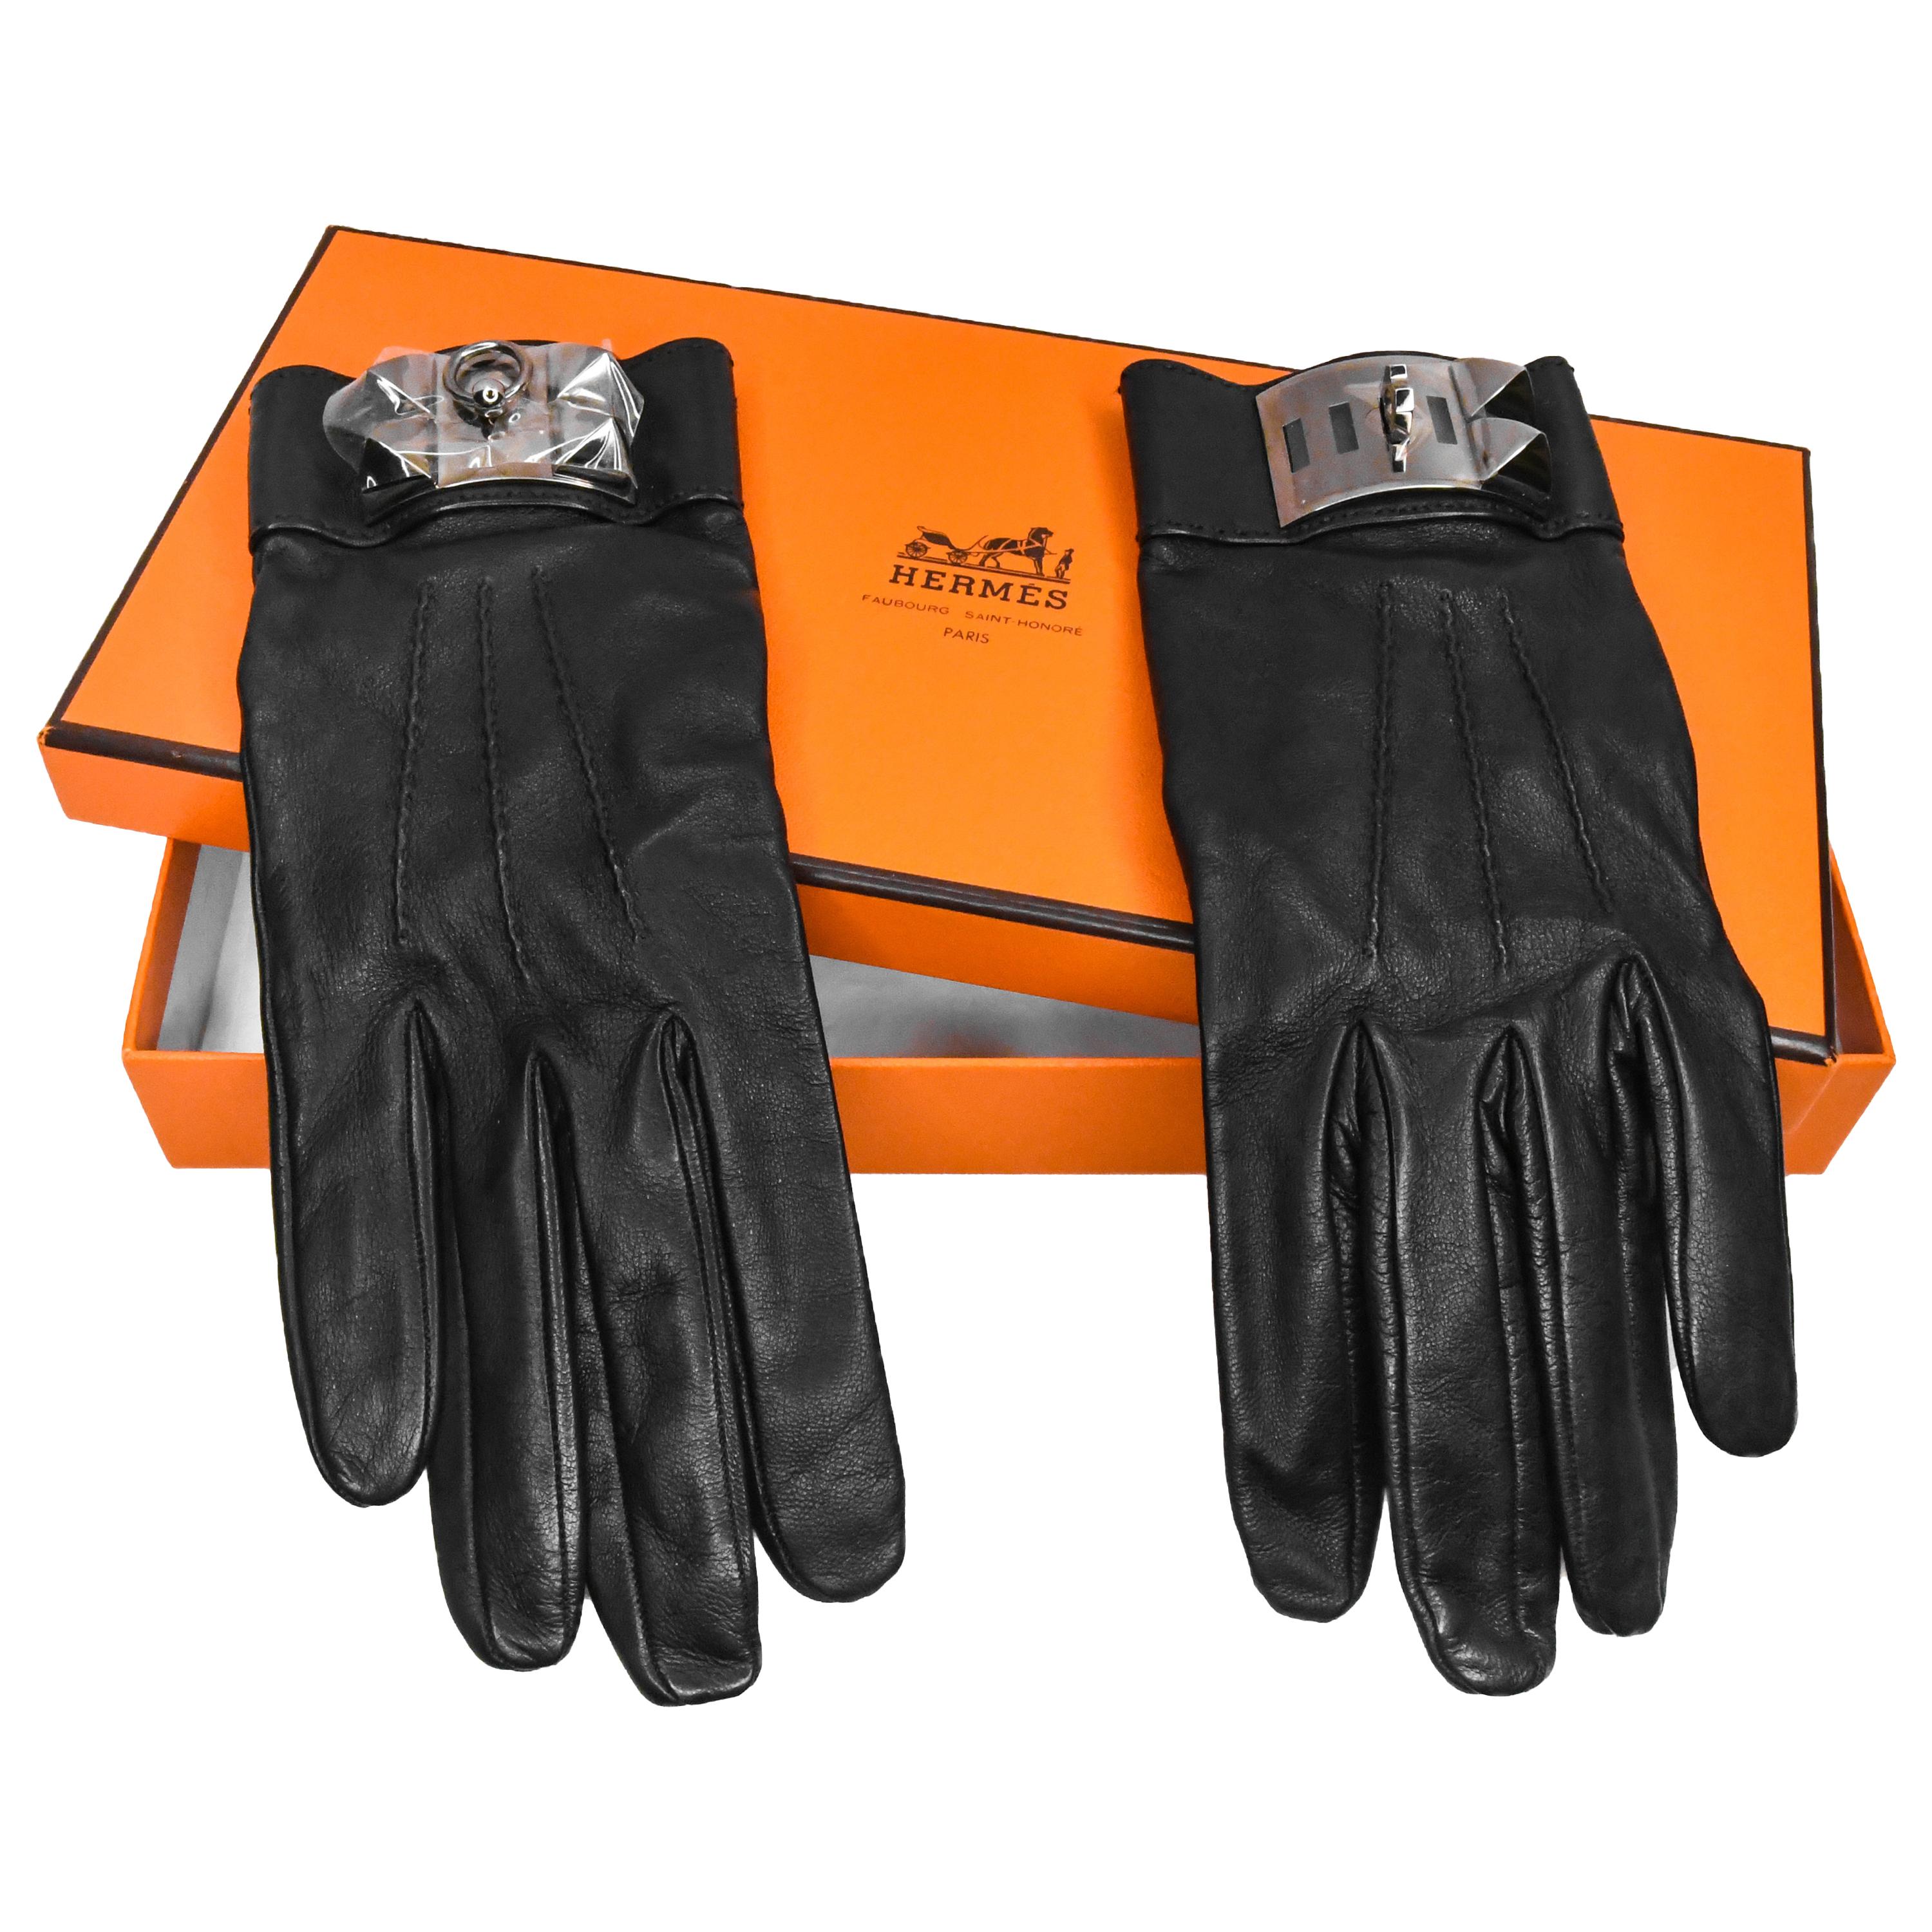 Hermès Medor Collier de Chien Lambskin Gloves New In Box Size 8